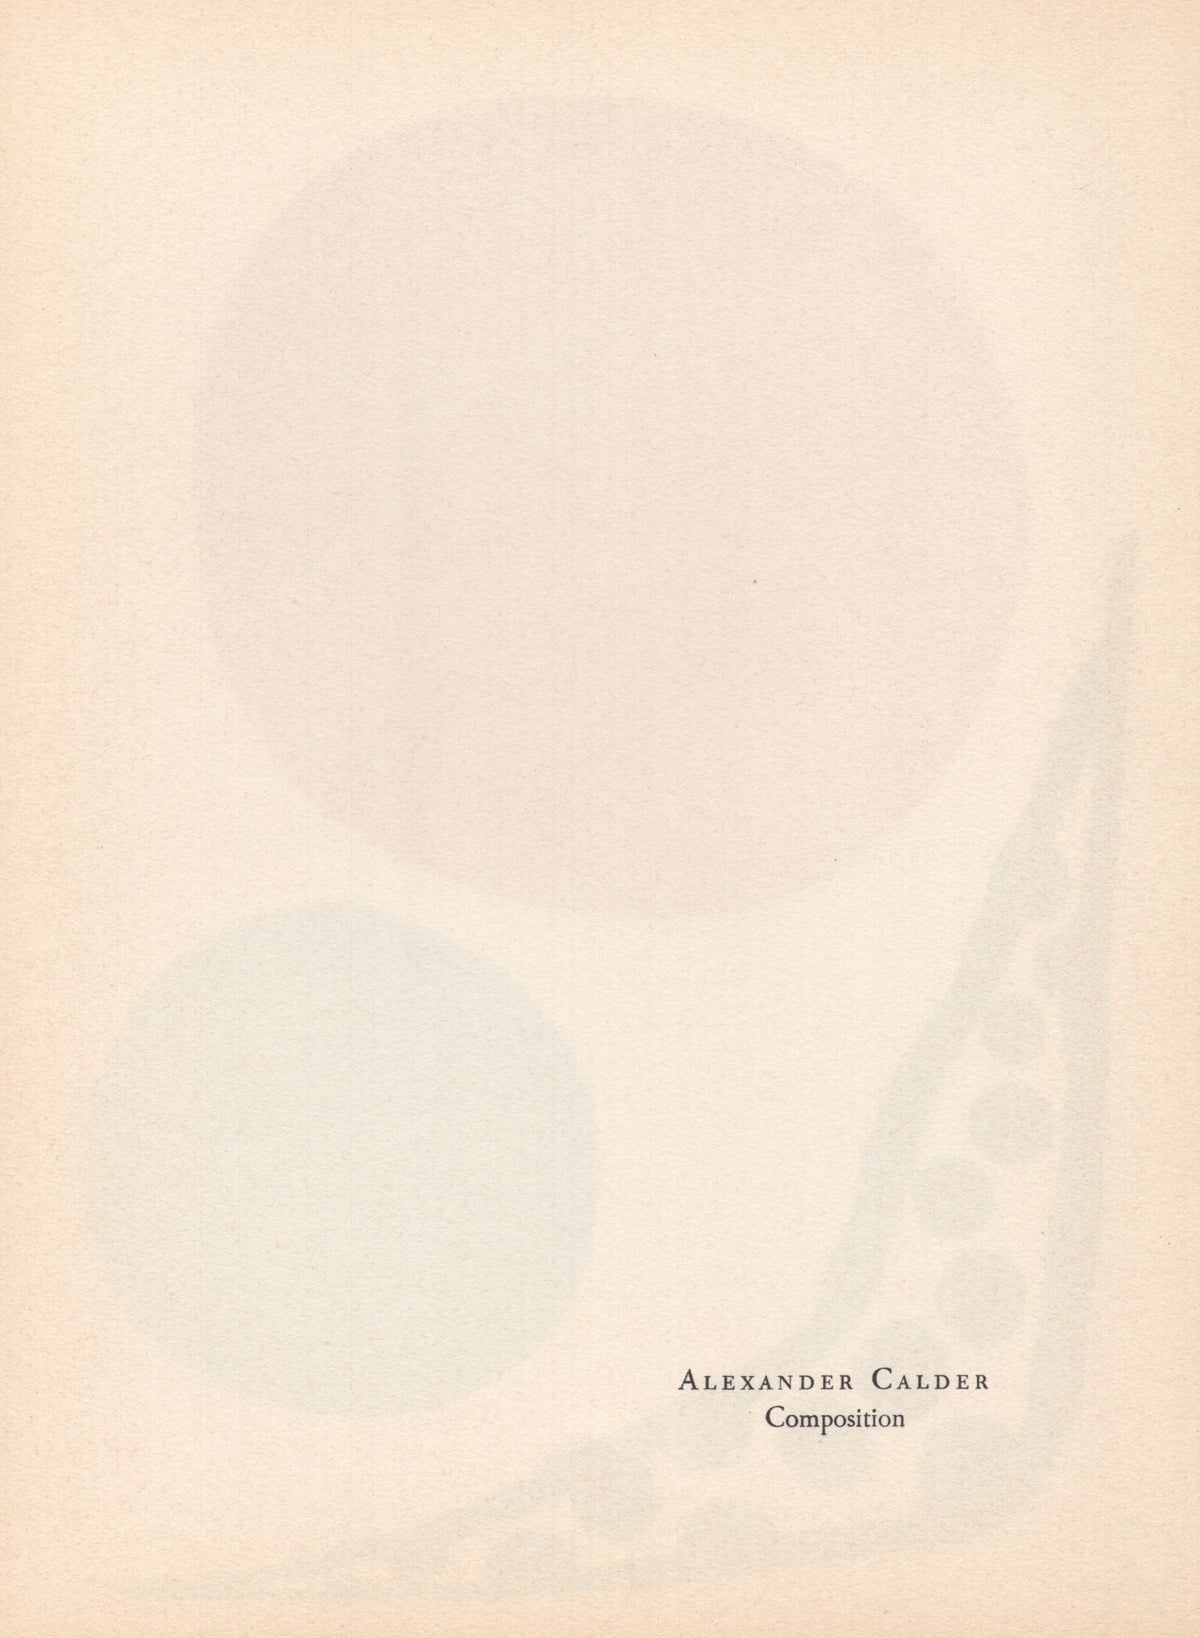 Alexander Calder - &quot;Composition&quot; - Mourlot Press 1964 Lithograph - 7.5 x 10&quot;